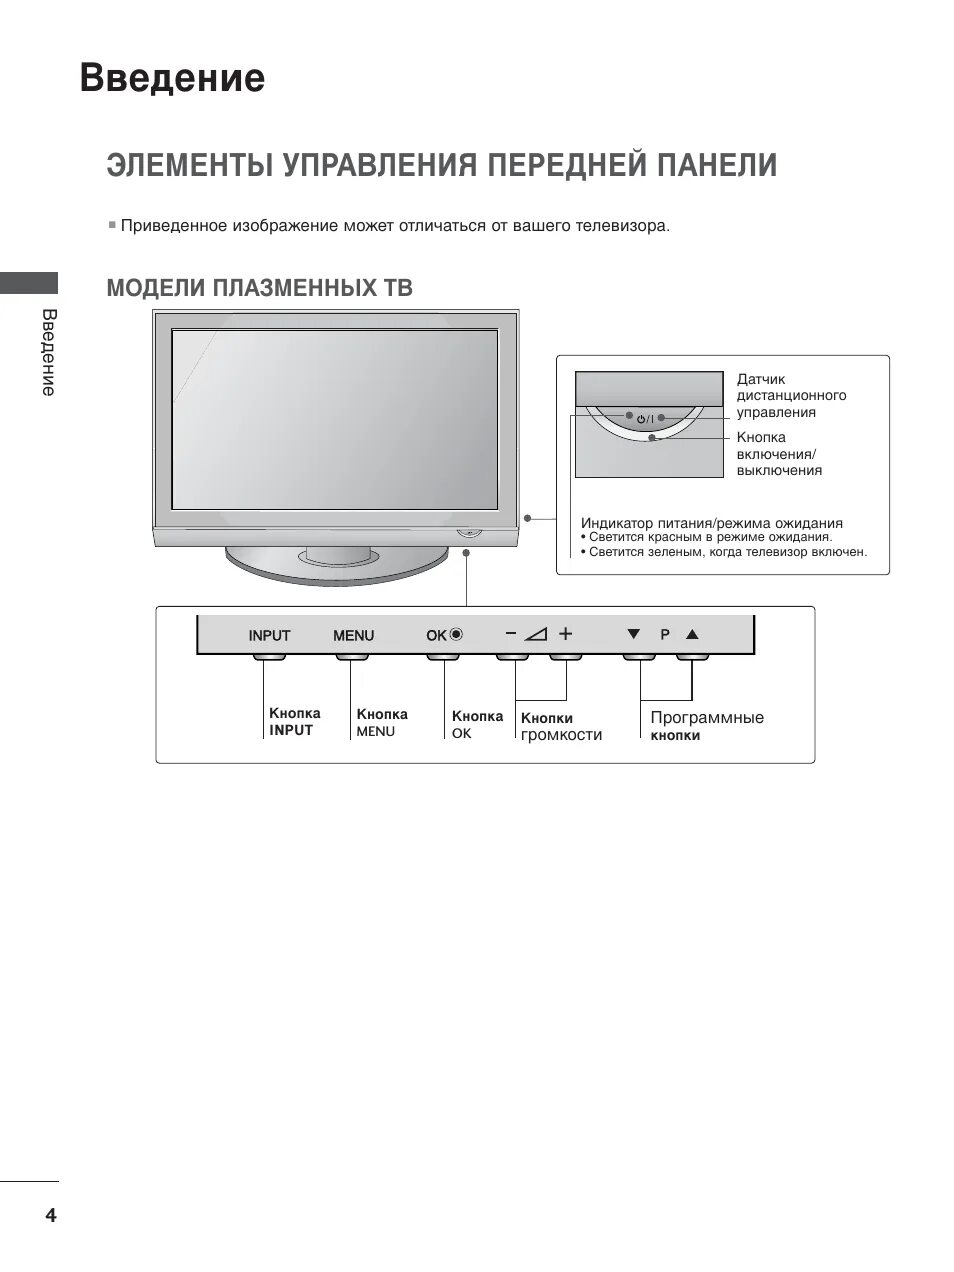 Телевизор LG 37lg6000. Кнопки управления на передней панели телевизора LG 32lf564v. Инструкция к телевизору LG. Инструкция телевизор LG 37lh4000.